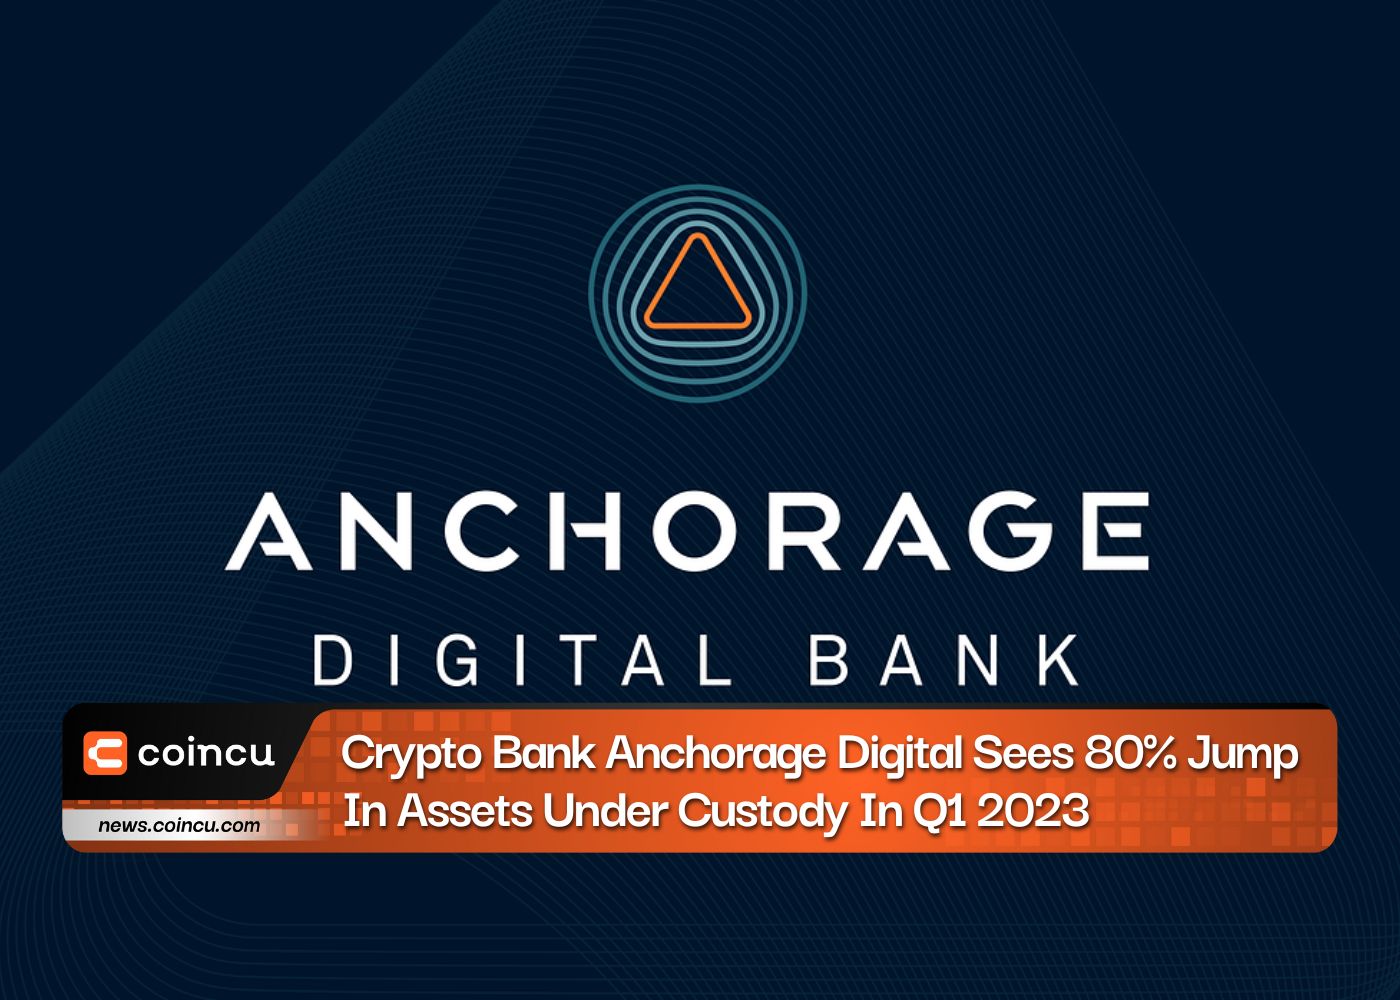 Ngân hàng tiền điện tử Anchorage Digital tăng 80% tài sản được lưu ký trong quý 1 năm 2023